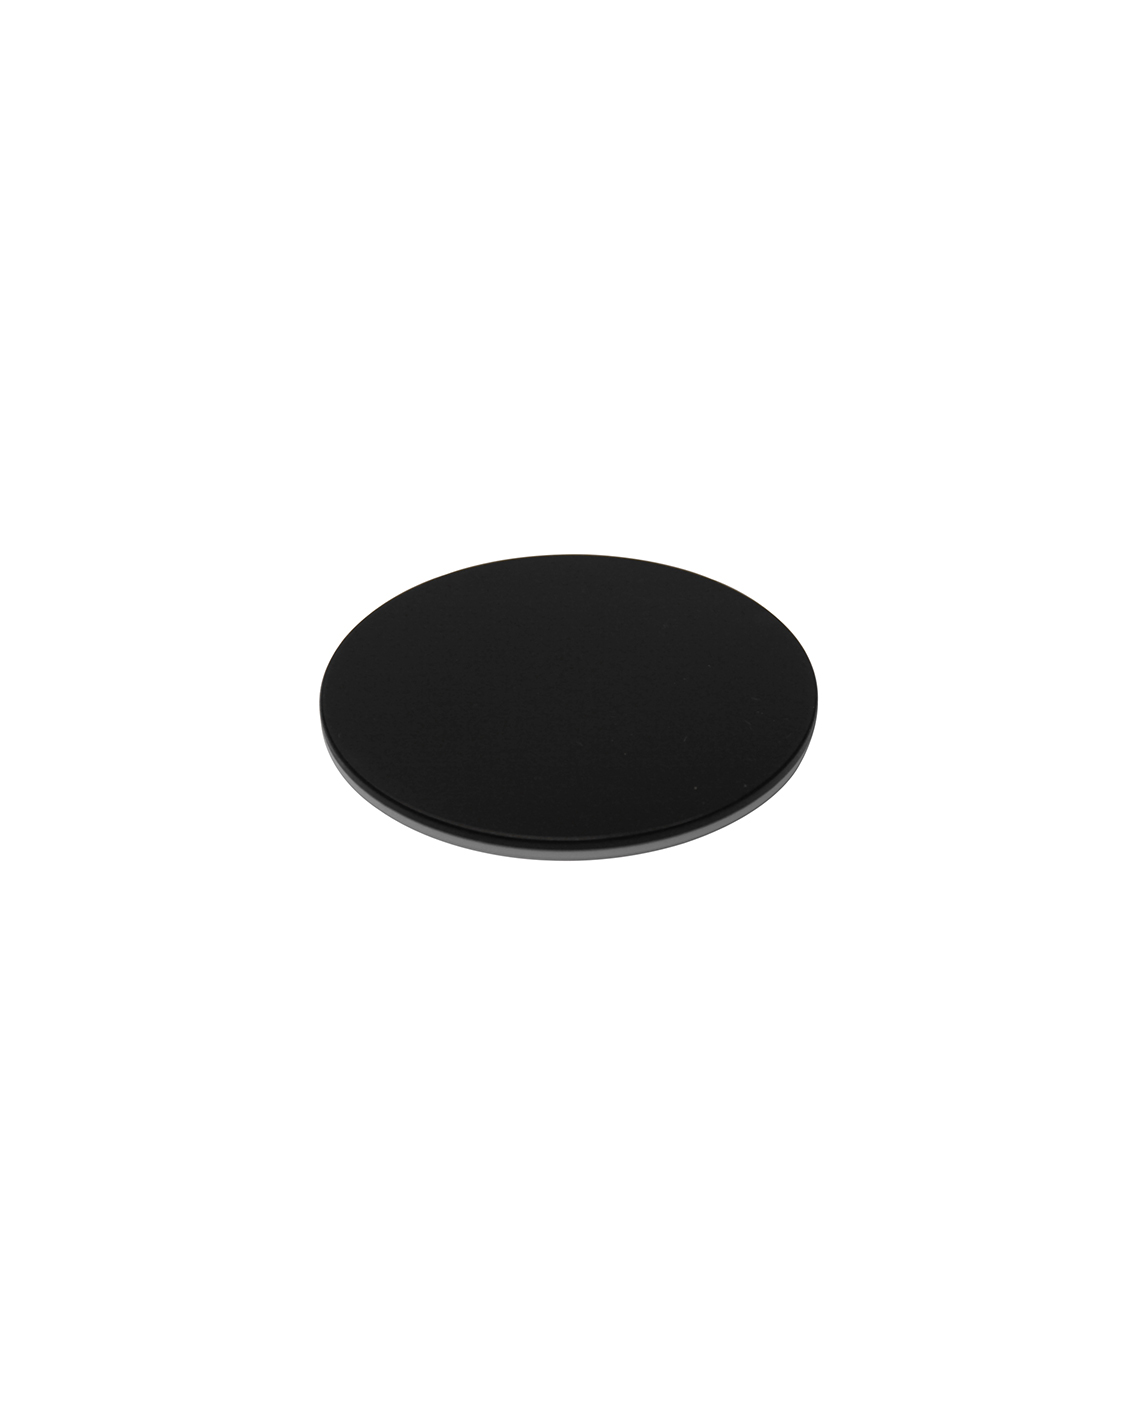 Weiß/Schwarzer Objekttisch, Typ 2, 95mm Durchmesser